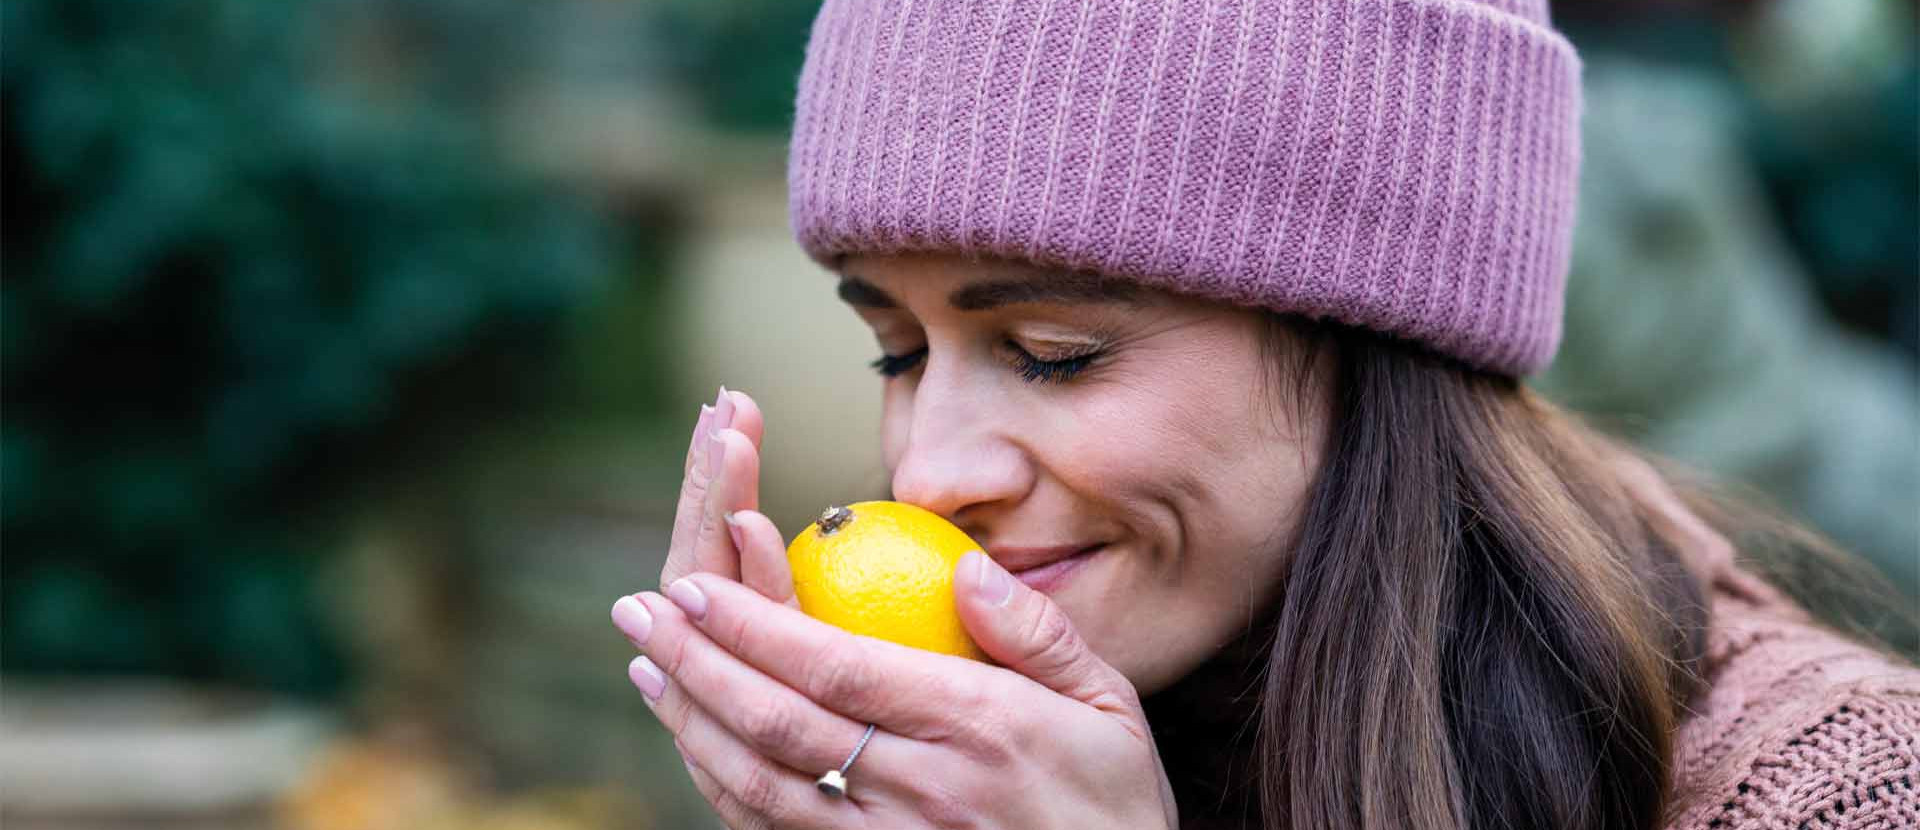 Frau mit Mütze riecht an einer Zitrone in ihren Händen